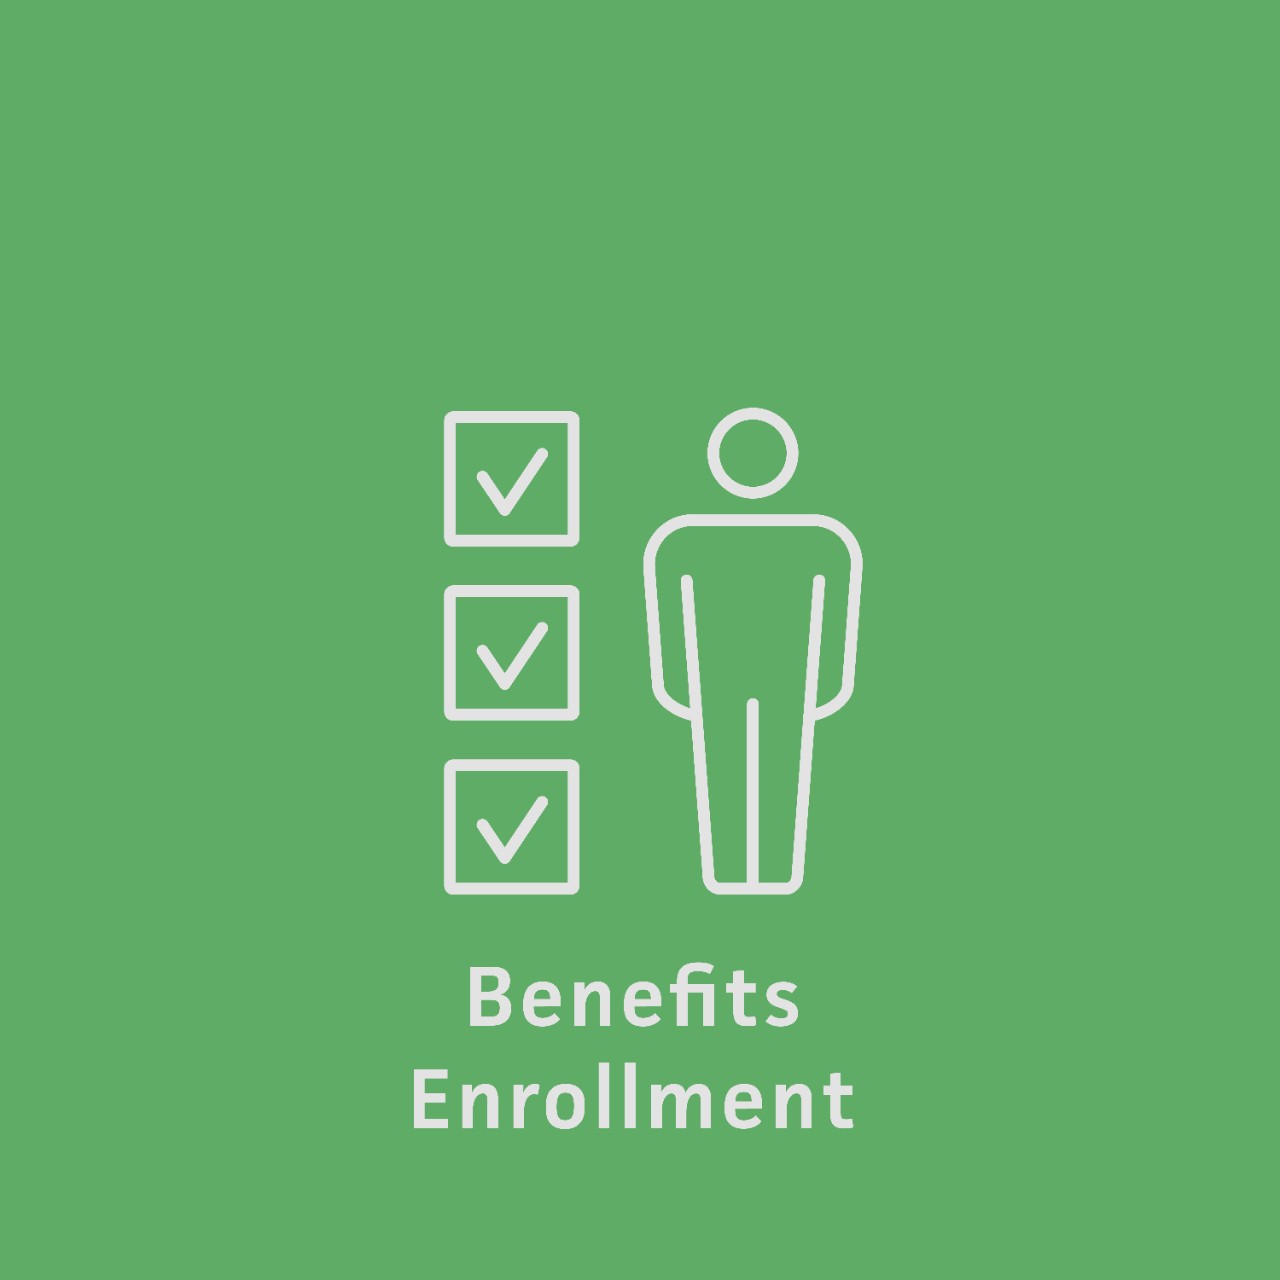 Benefits Enrollment